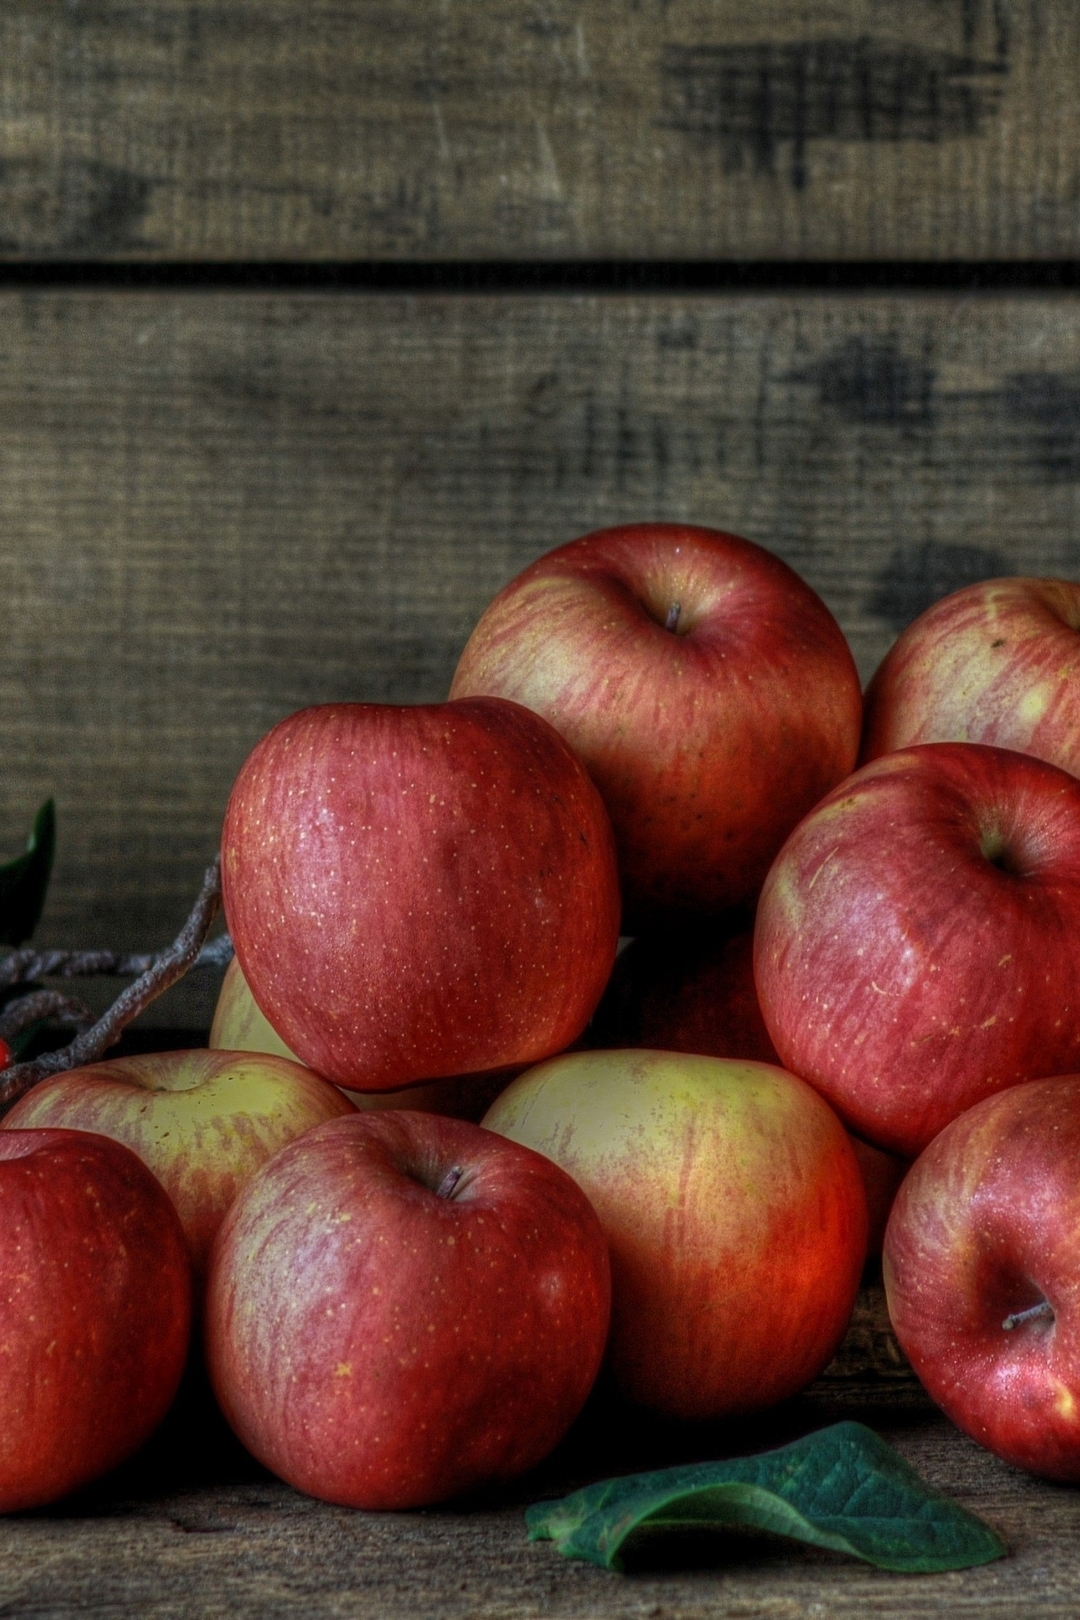 Картинка: Яблоки, красные, спелые, урожай